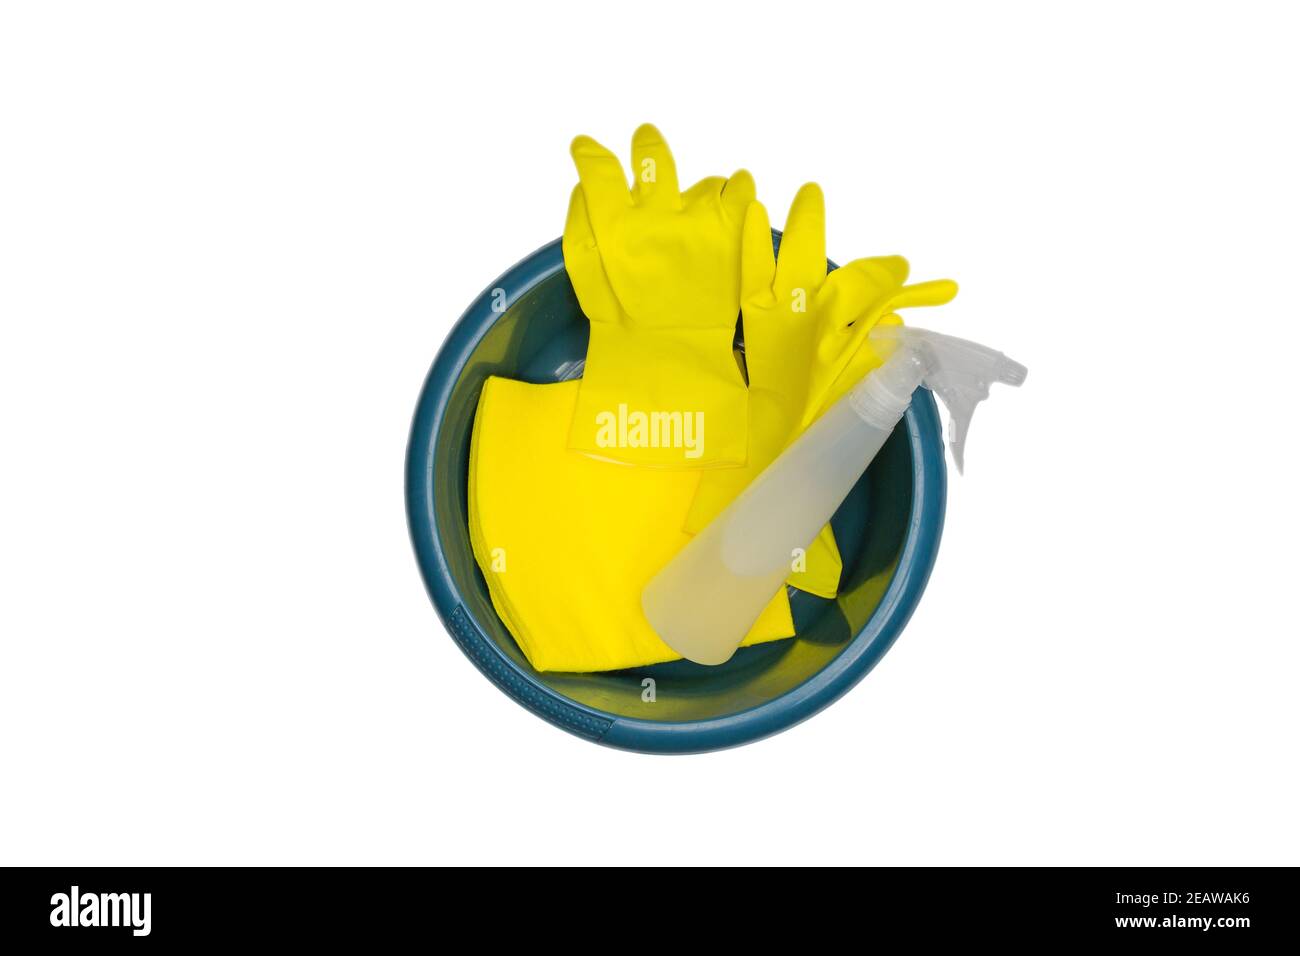 Vielzahl von Reinigungsprodukten in einem Eimer Draufsicht isoliert auf weißem Hintergrund, Gelbe Handschuhe für Schutz und Wasserflasche Spray, Mikrofasertuch, Gesundheit und Reinigung Business-Konzept Stockfoto